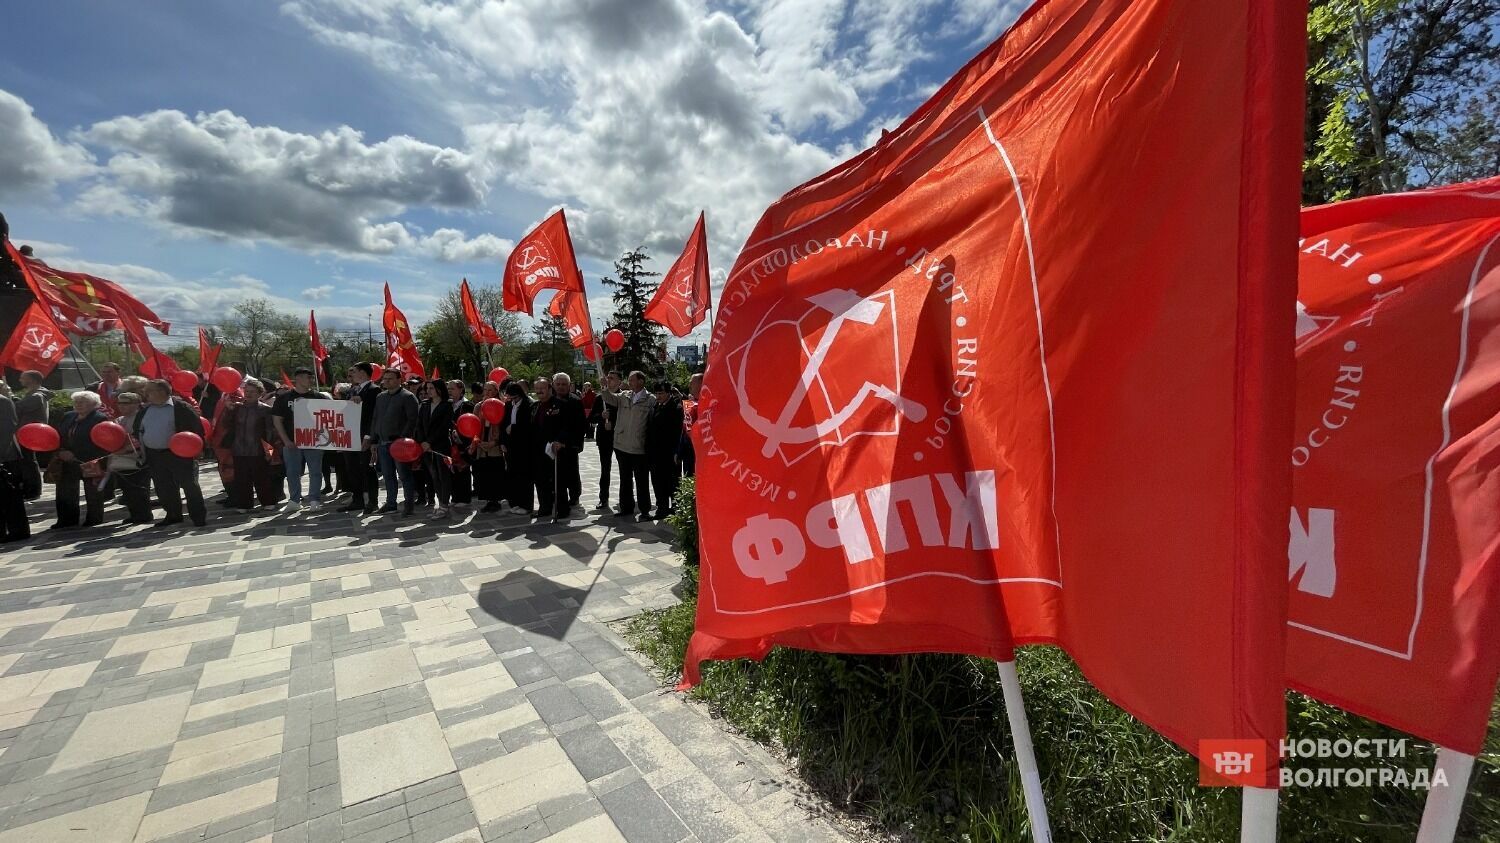 Сталинградский обком КПРФ провел митинг-концерт 1 мая на площади Металлургов в Волгограде.